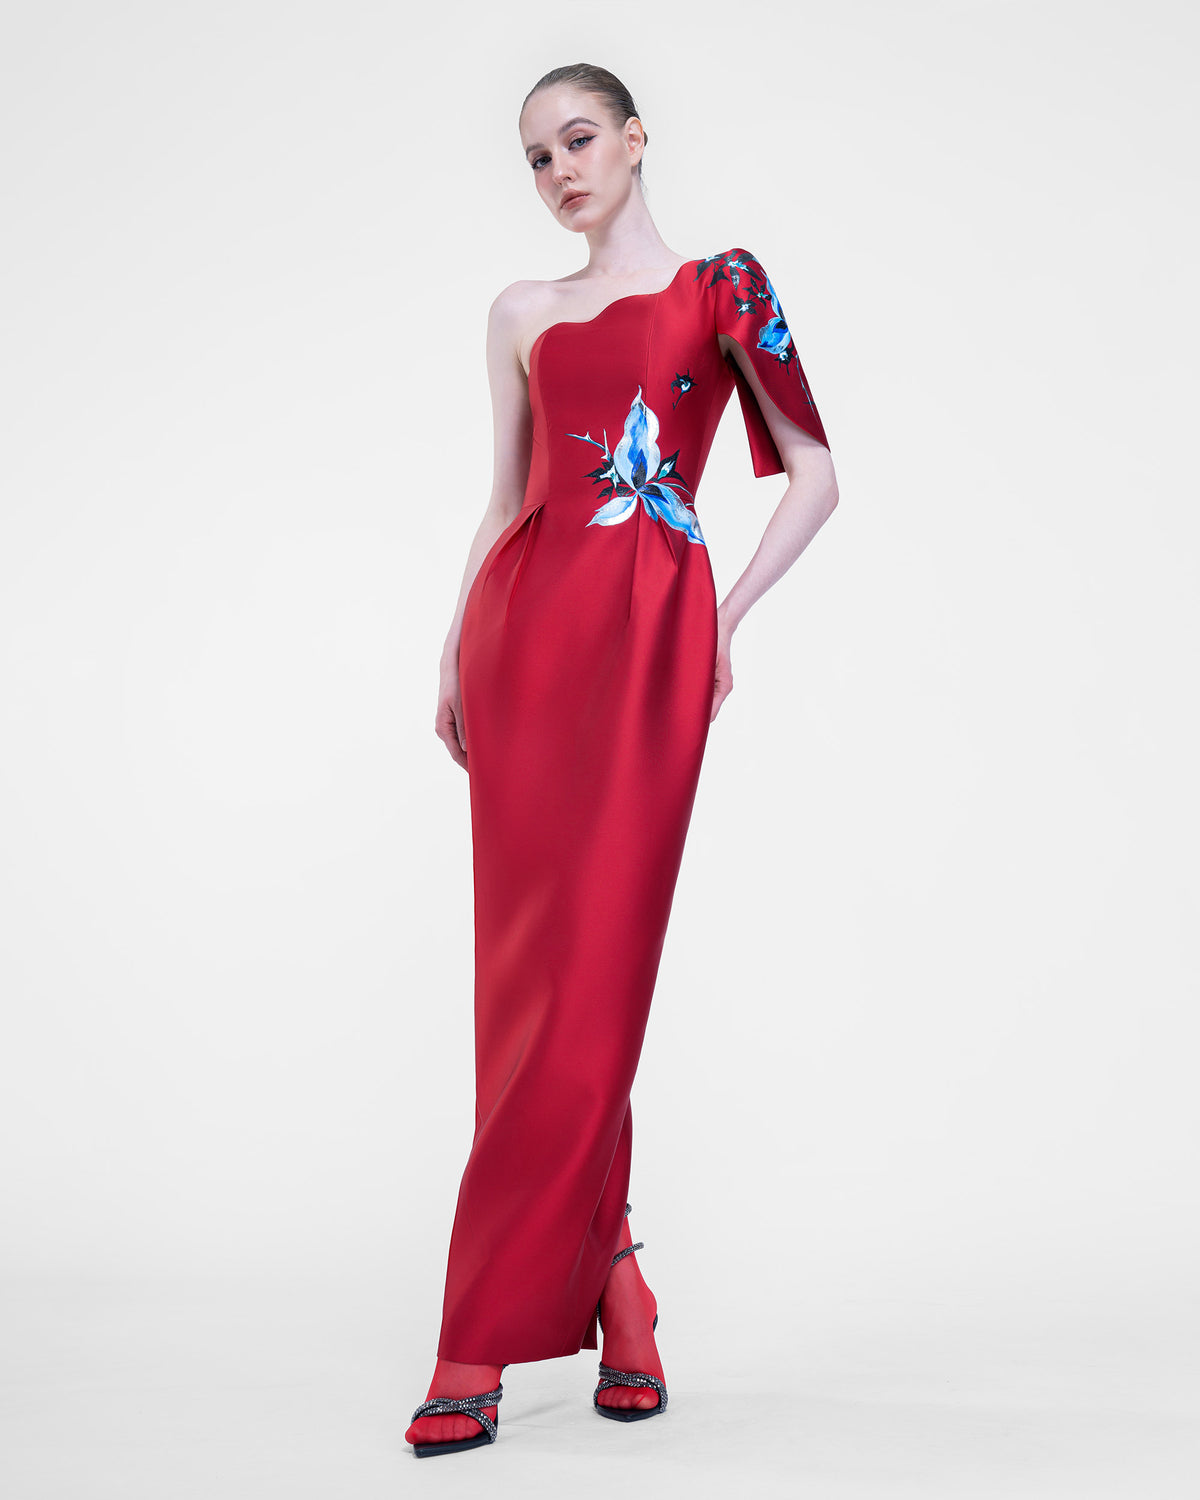 Aphrodite - One-shoulder Crimson Evening Dress